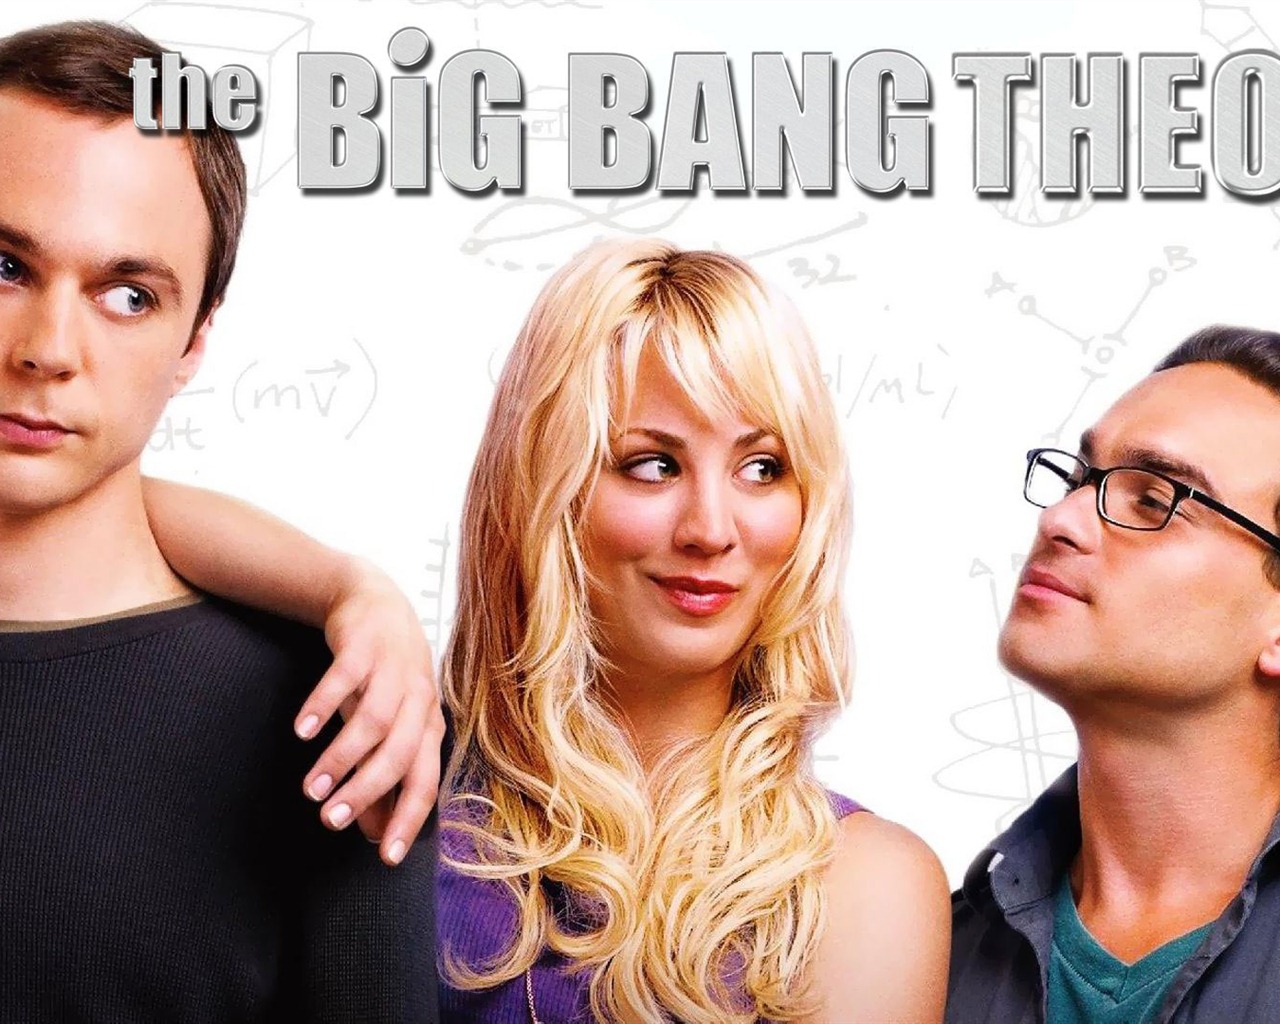 The Big Bang Theory 生活大爆炸 电视剧高清壁纸21 - 1280x1024